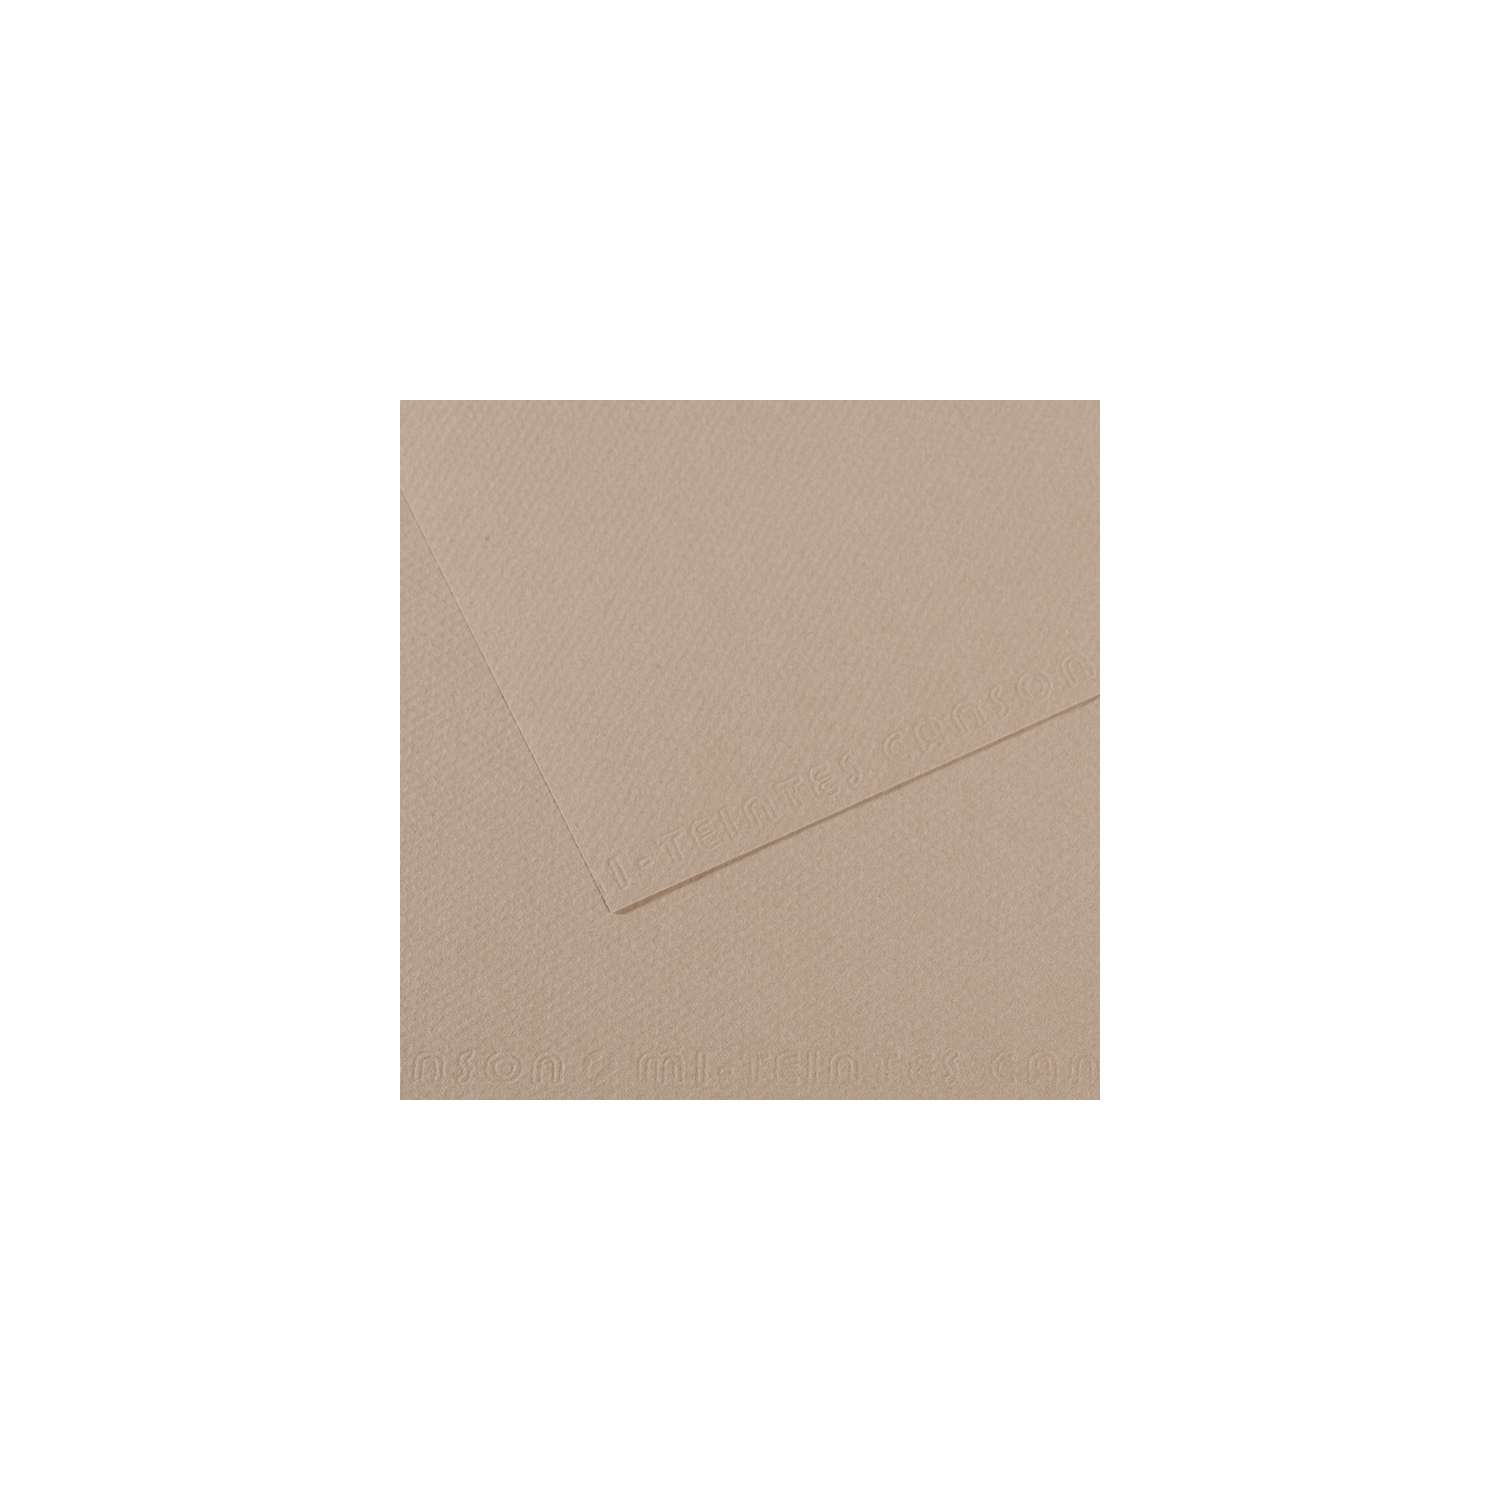 Canson 200002789 Pochette Papier à dessin Mi-Teintes 12 feuilles 160g 24 x  32 cm Couleurs claires - Papier Technique - Creavea